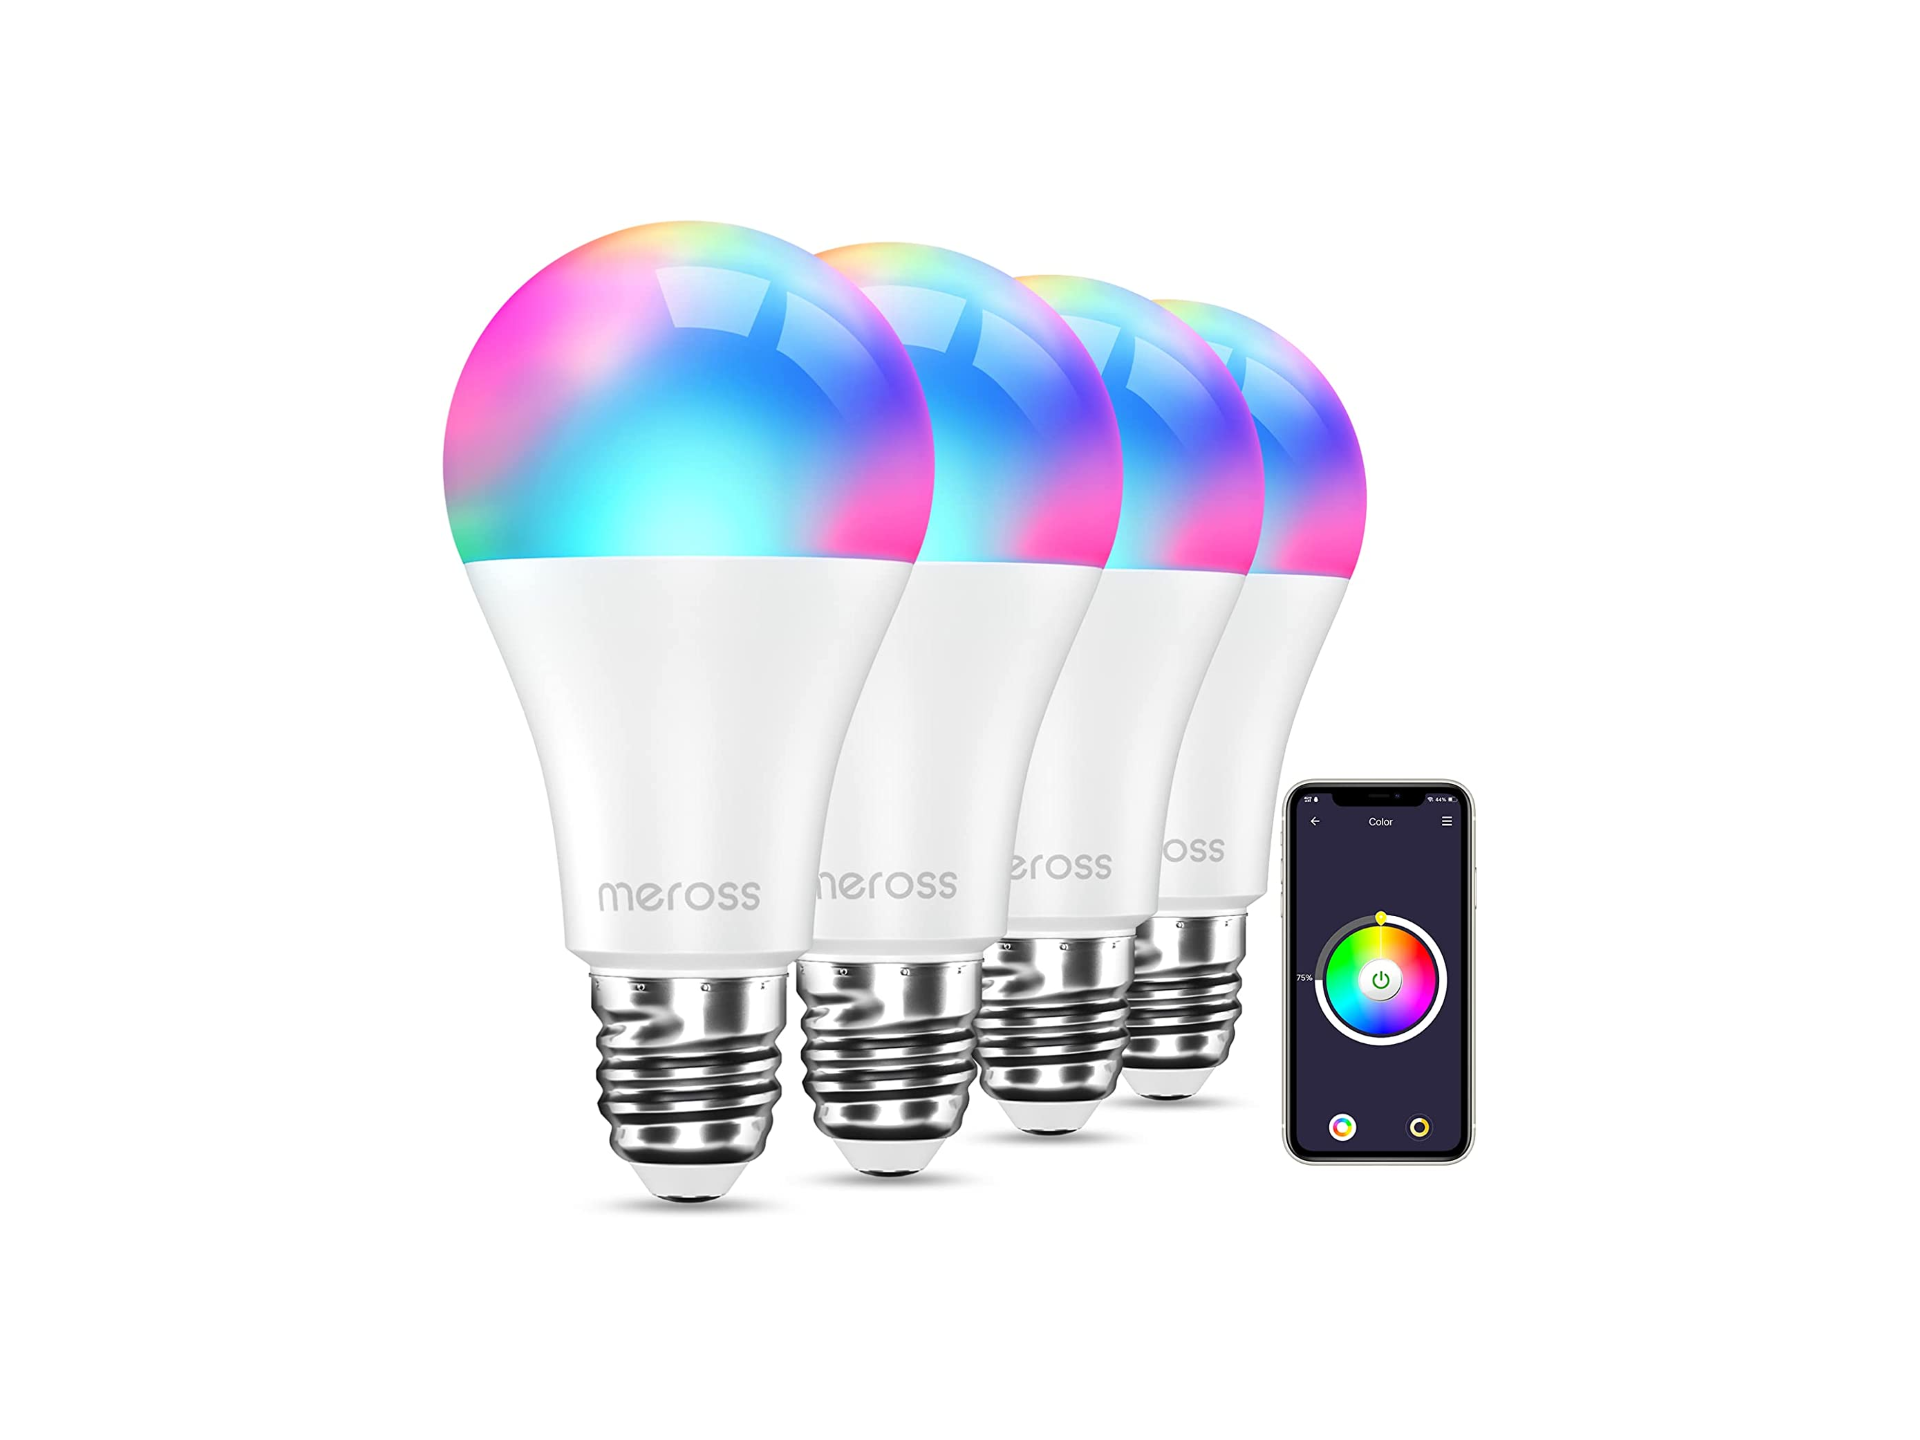 Illuminate la vostra smart home con questo kit di lampadine Wi-Fi